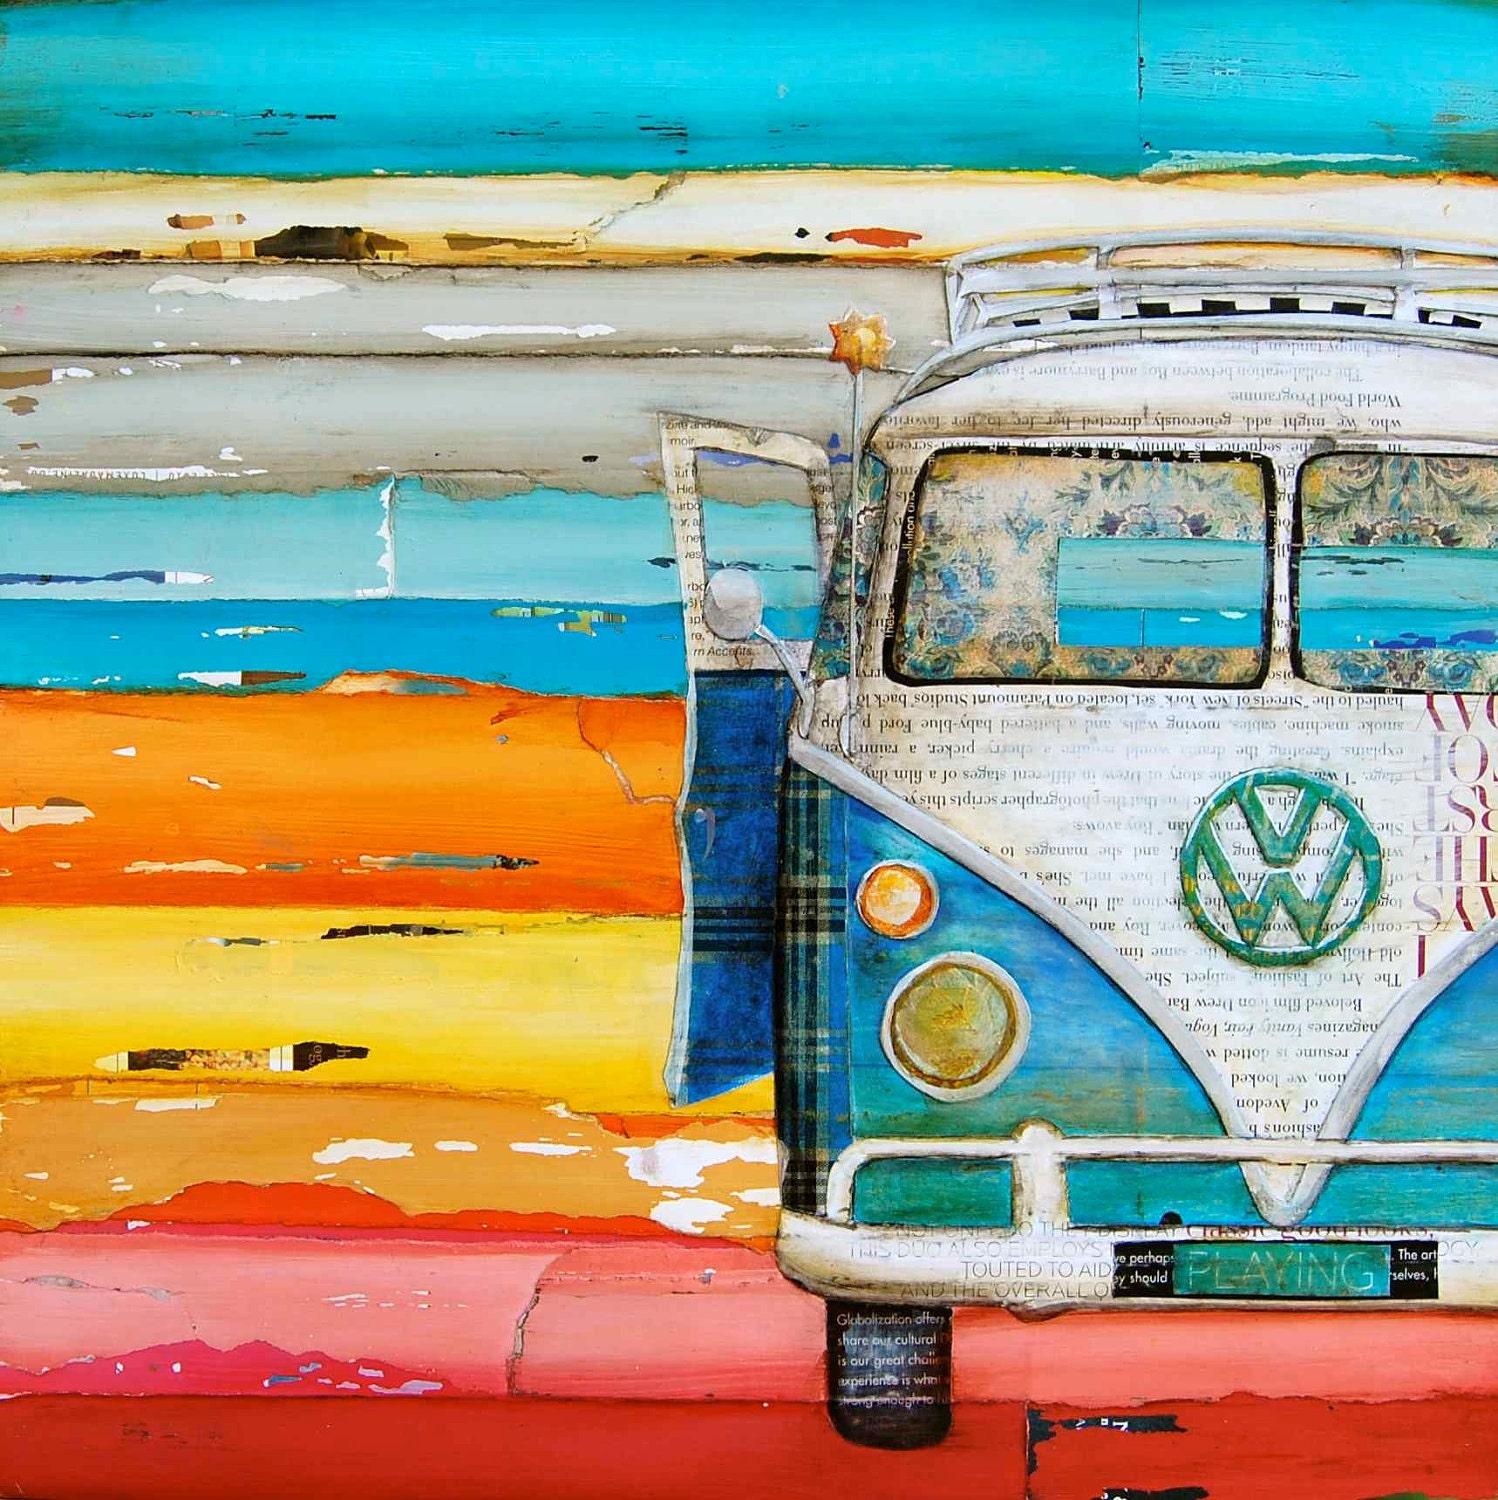 Vintage Vw Volkswagen Van at Beach - "Playing Hooky" - Fine Art Print - 16x20